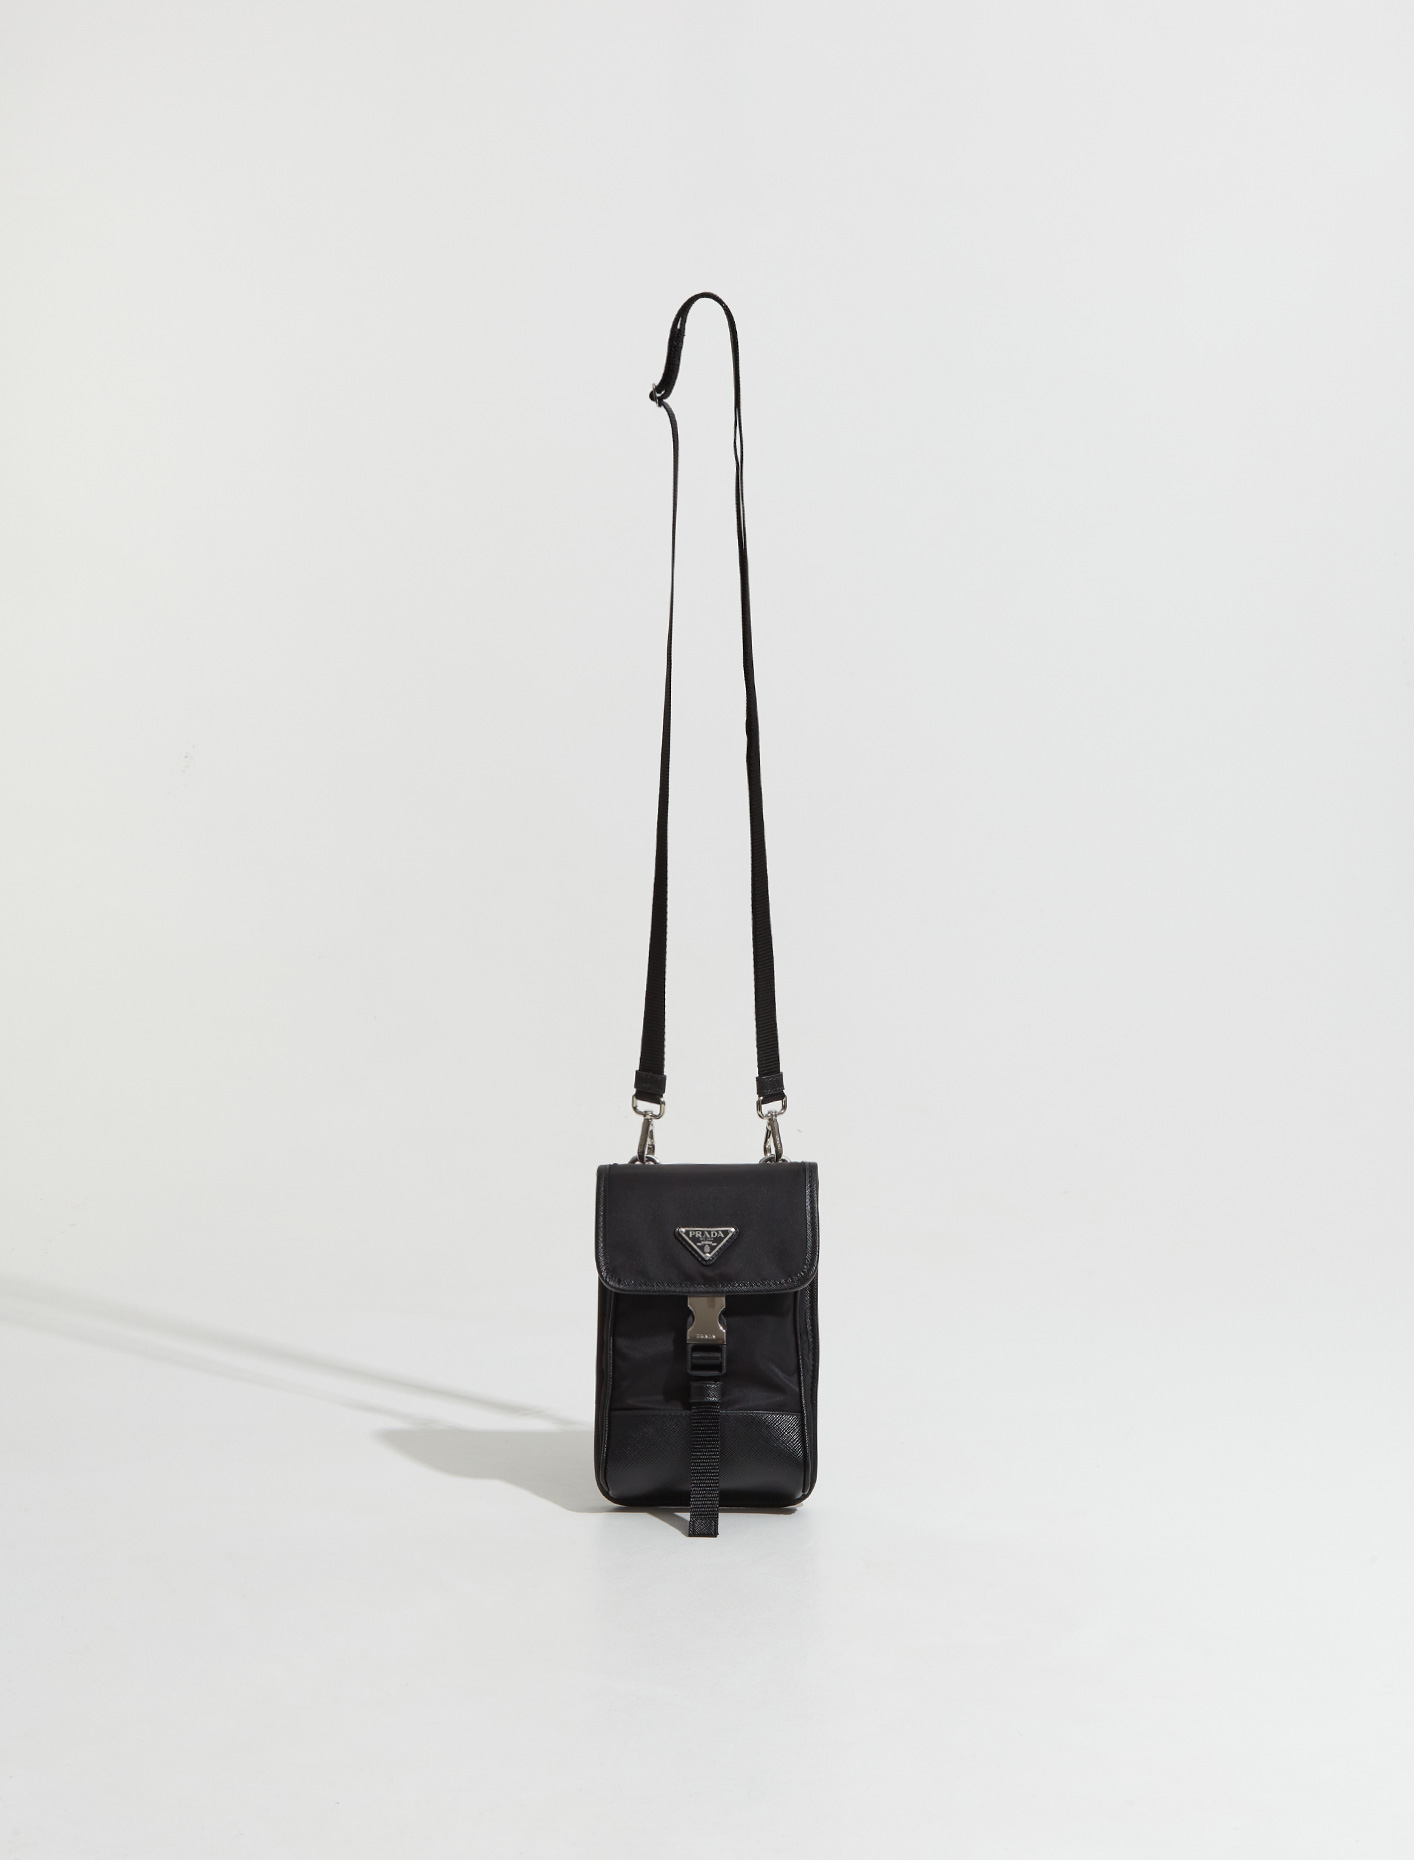 Prada Women Re-Nylon and Saffiano Leather Tote Bag-Black